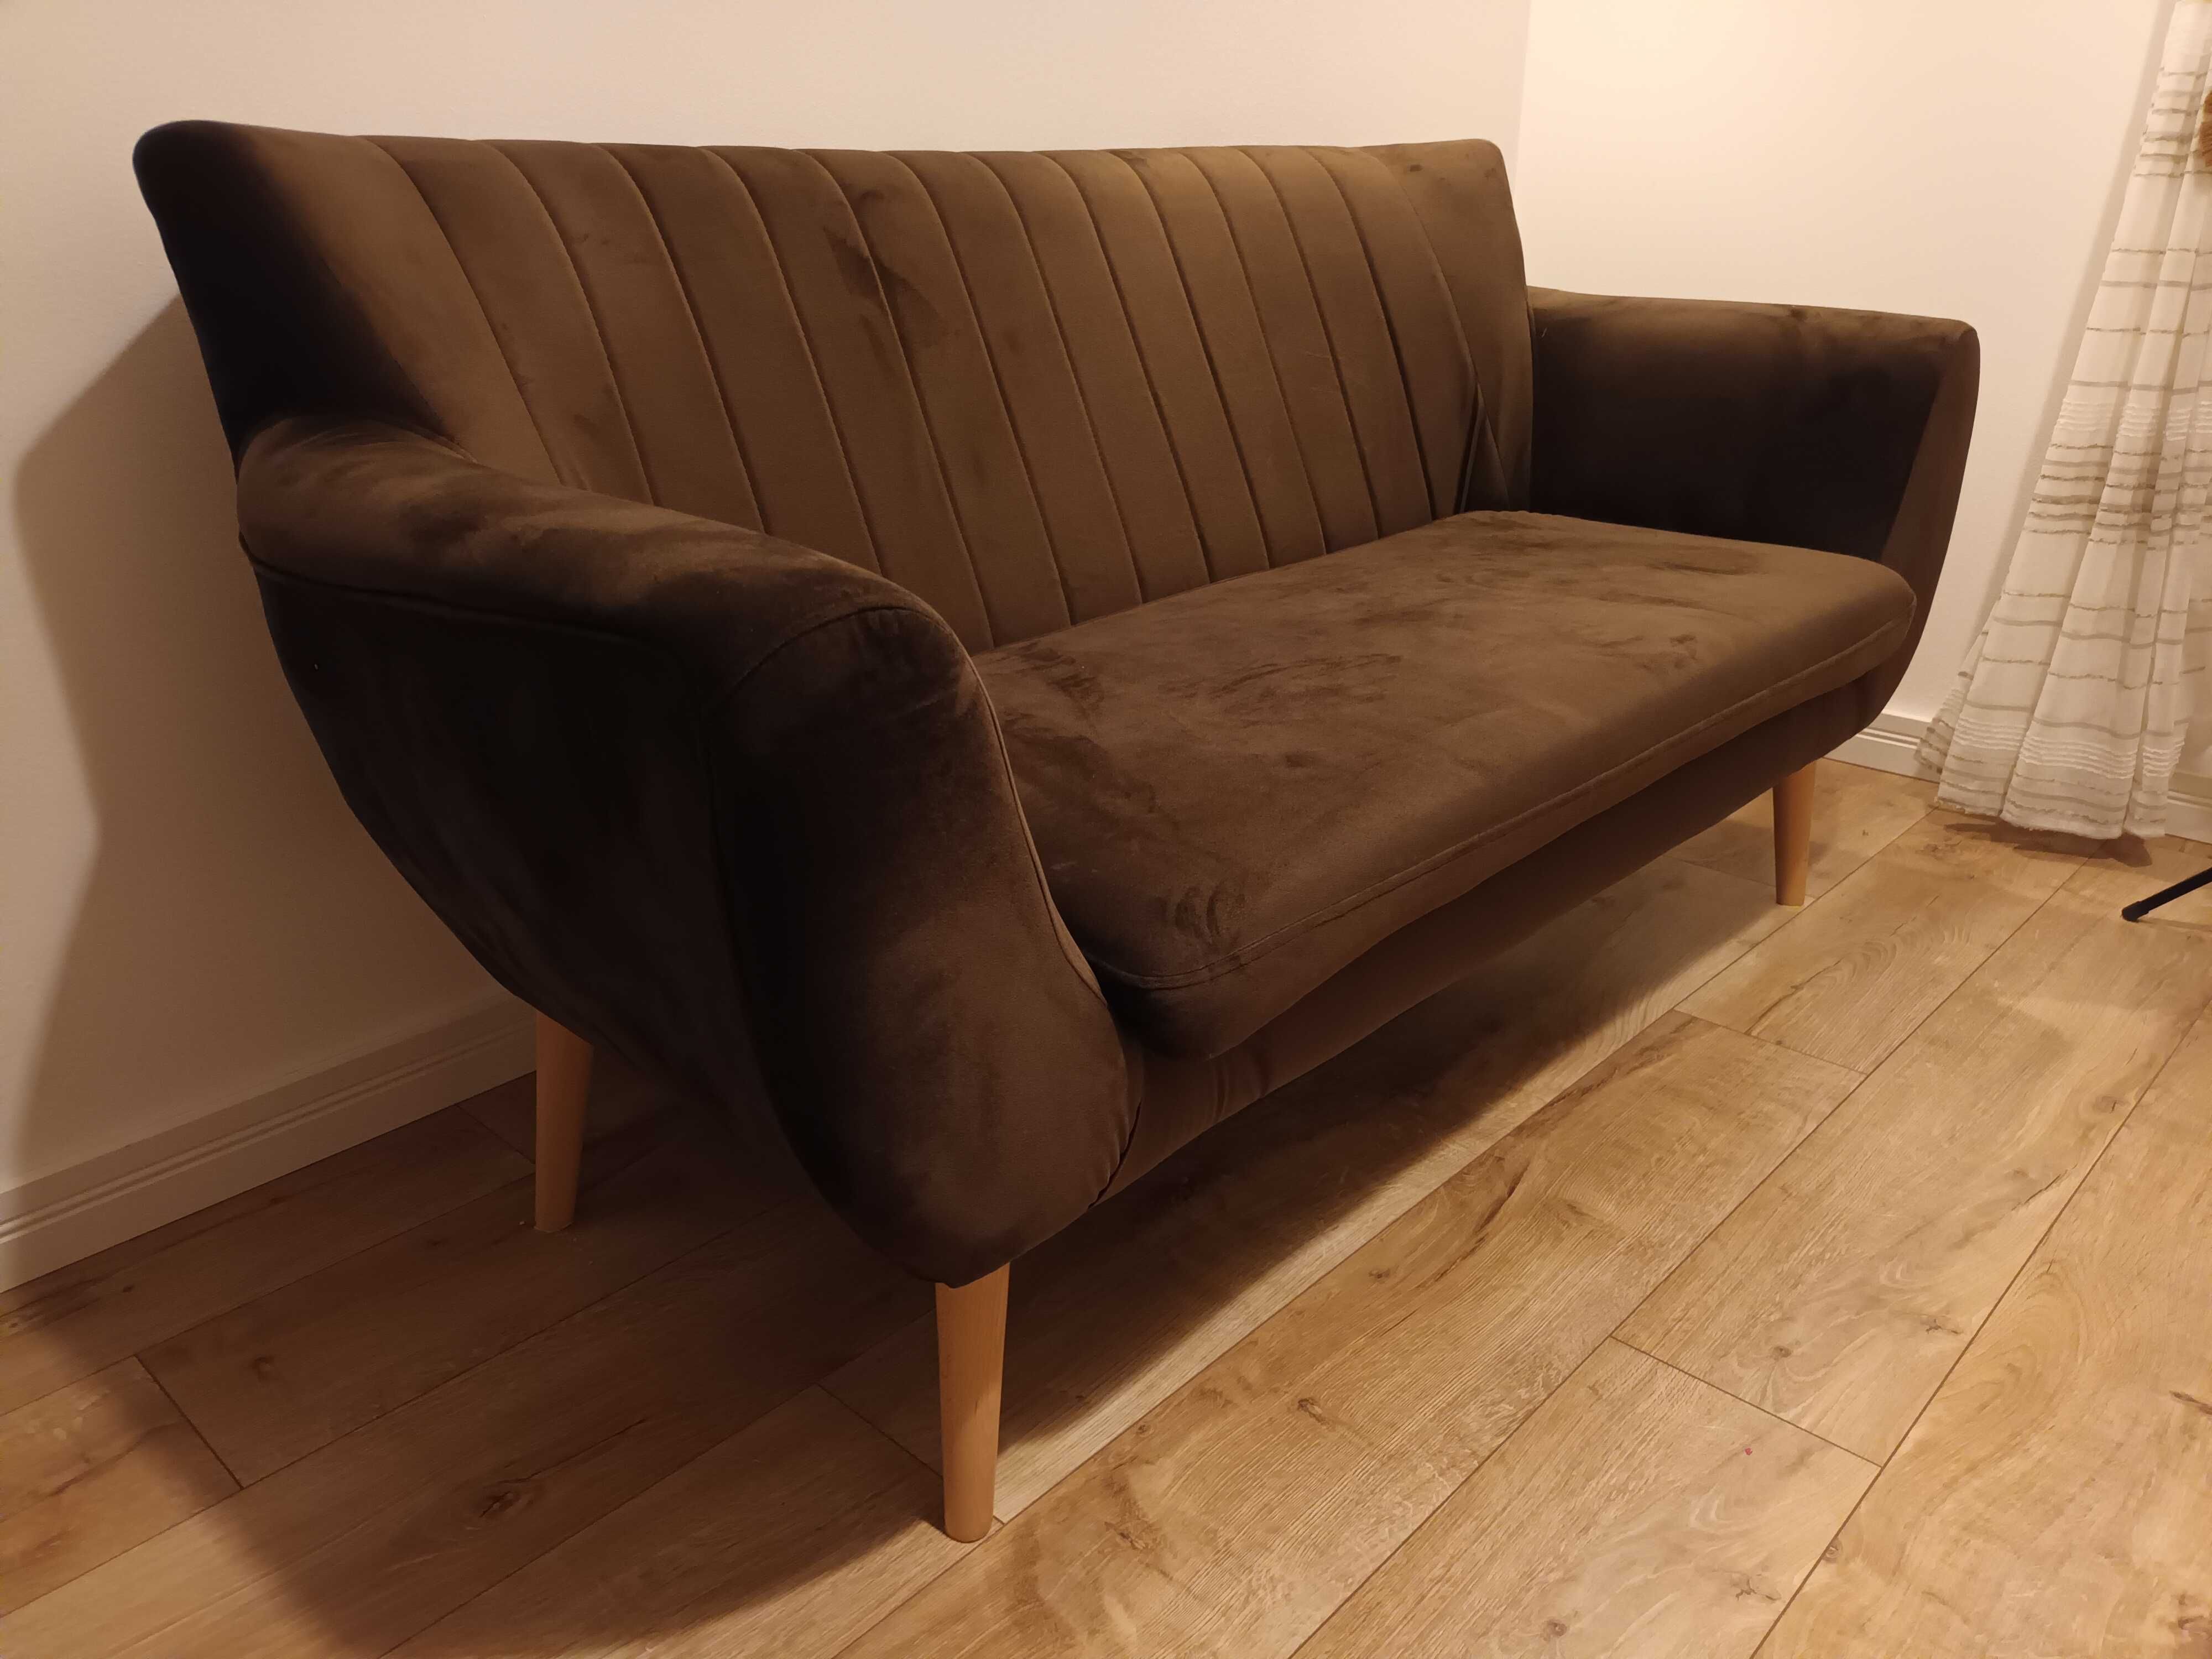 Sofa kanapa PERUGIA 2-osobowa w stylu skandynawskim 160 cm